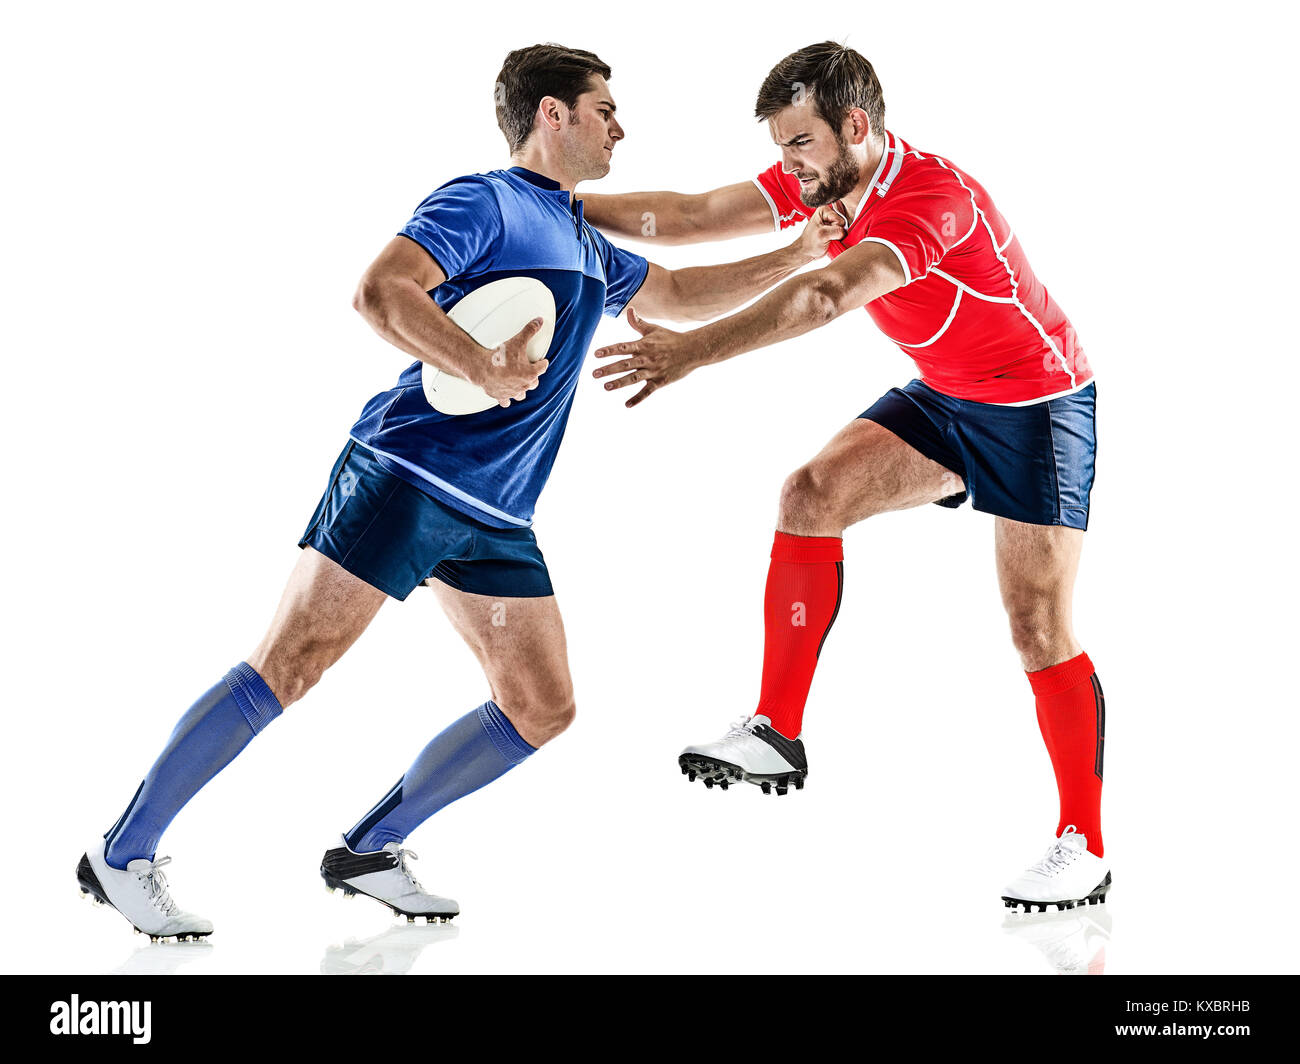 Rugby players immagini e fotografie stock ad alta risoluzione - Alamy